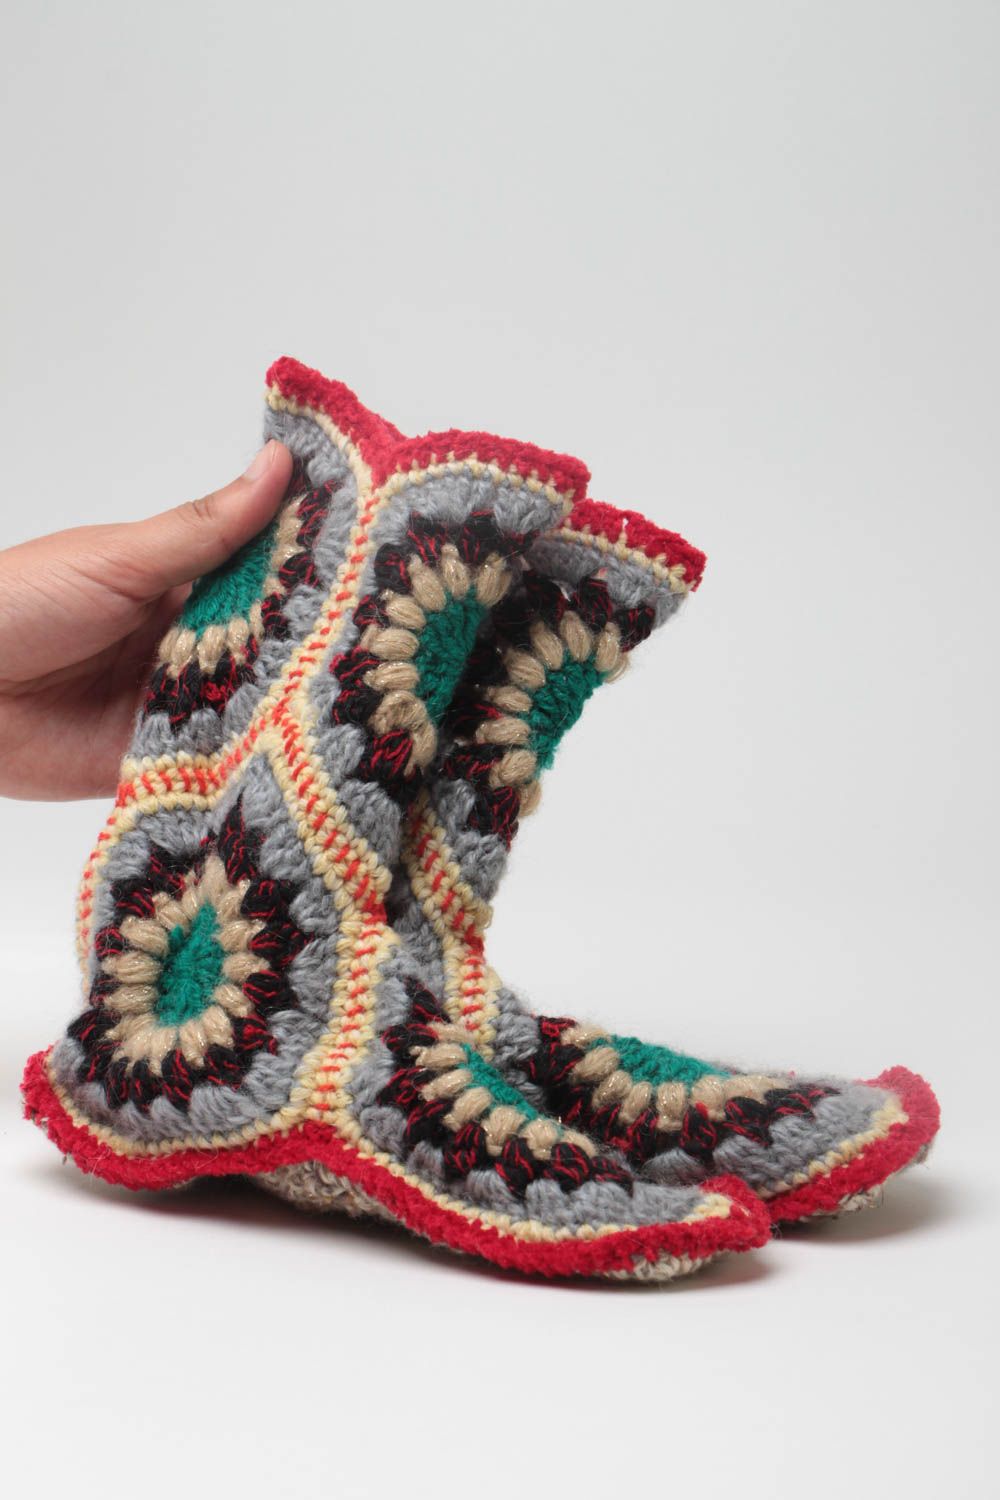 Pantoufles faits main hautes multicolores tricotées au crochet pour femme photo 5